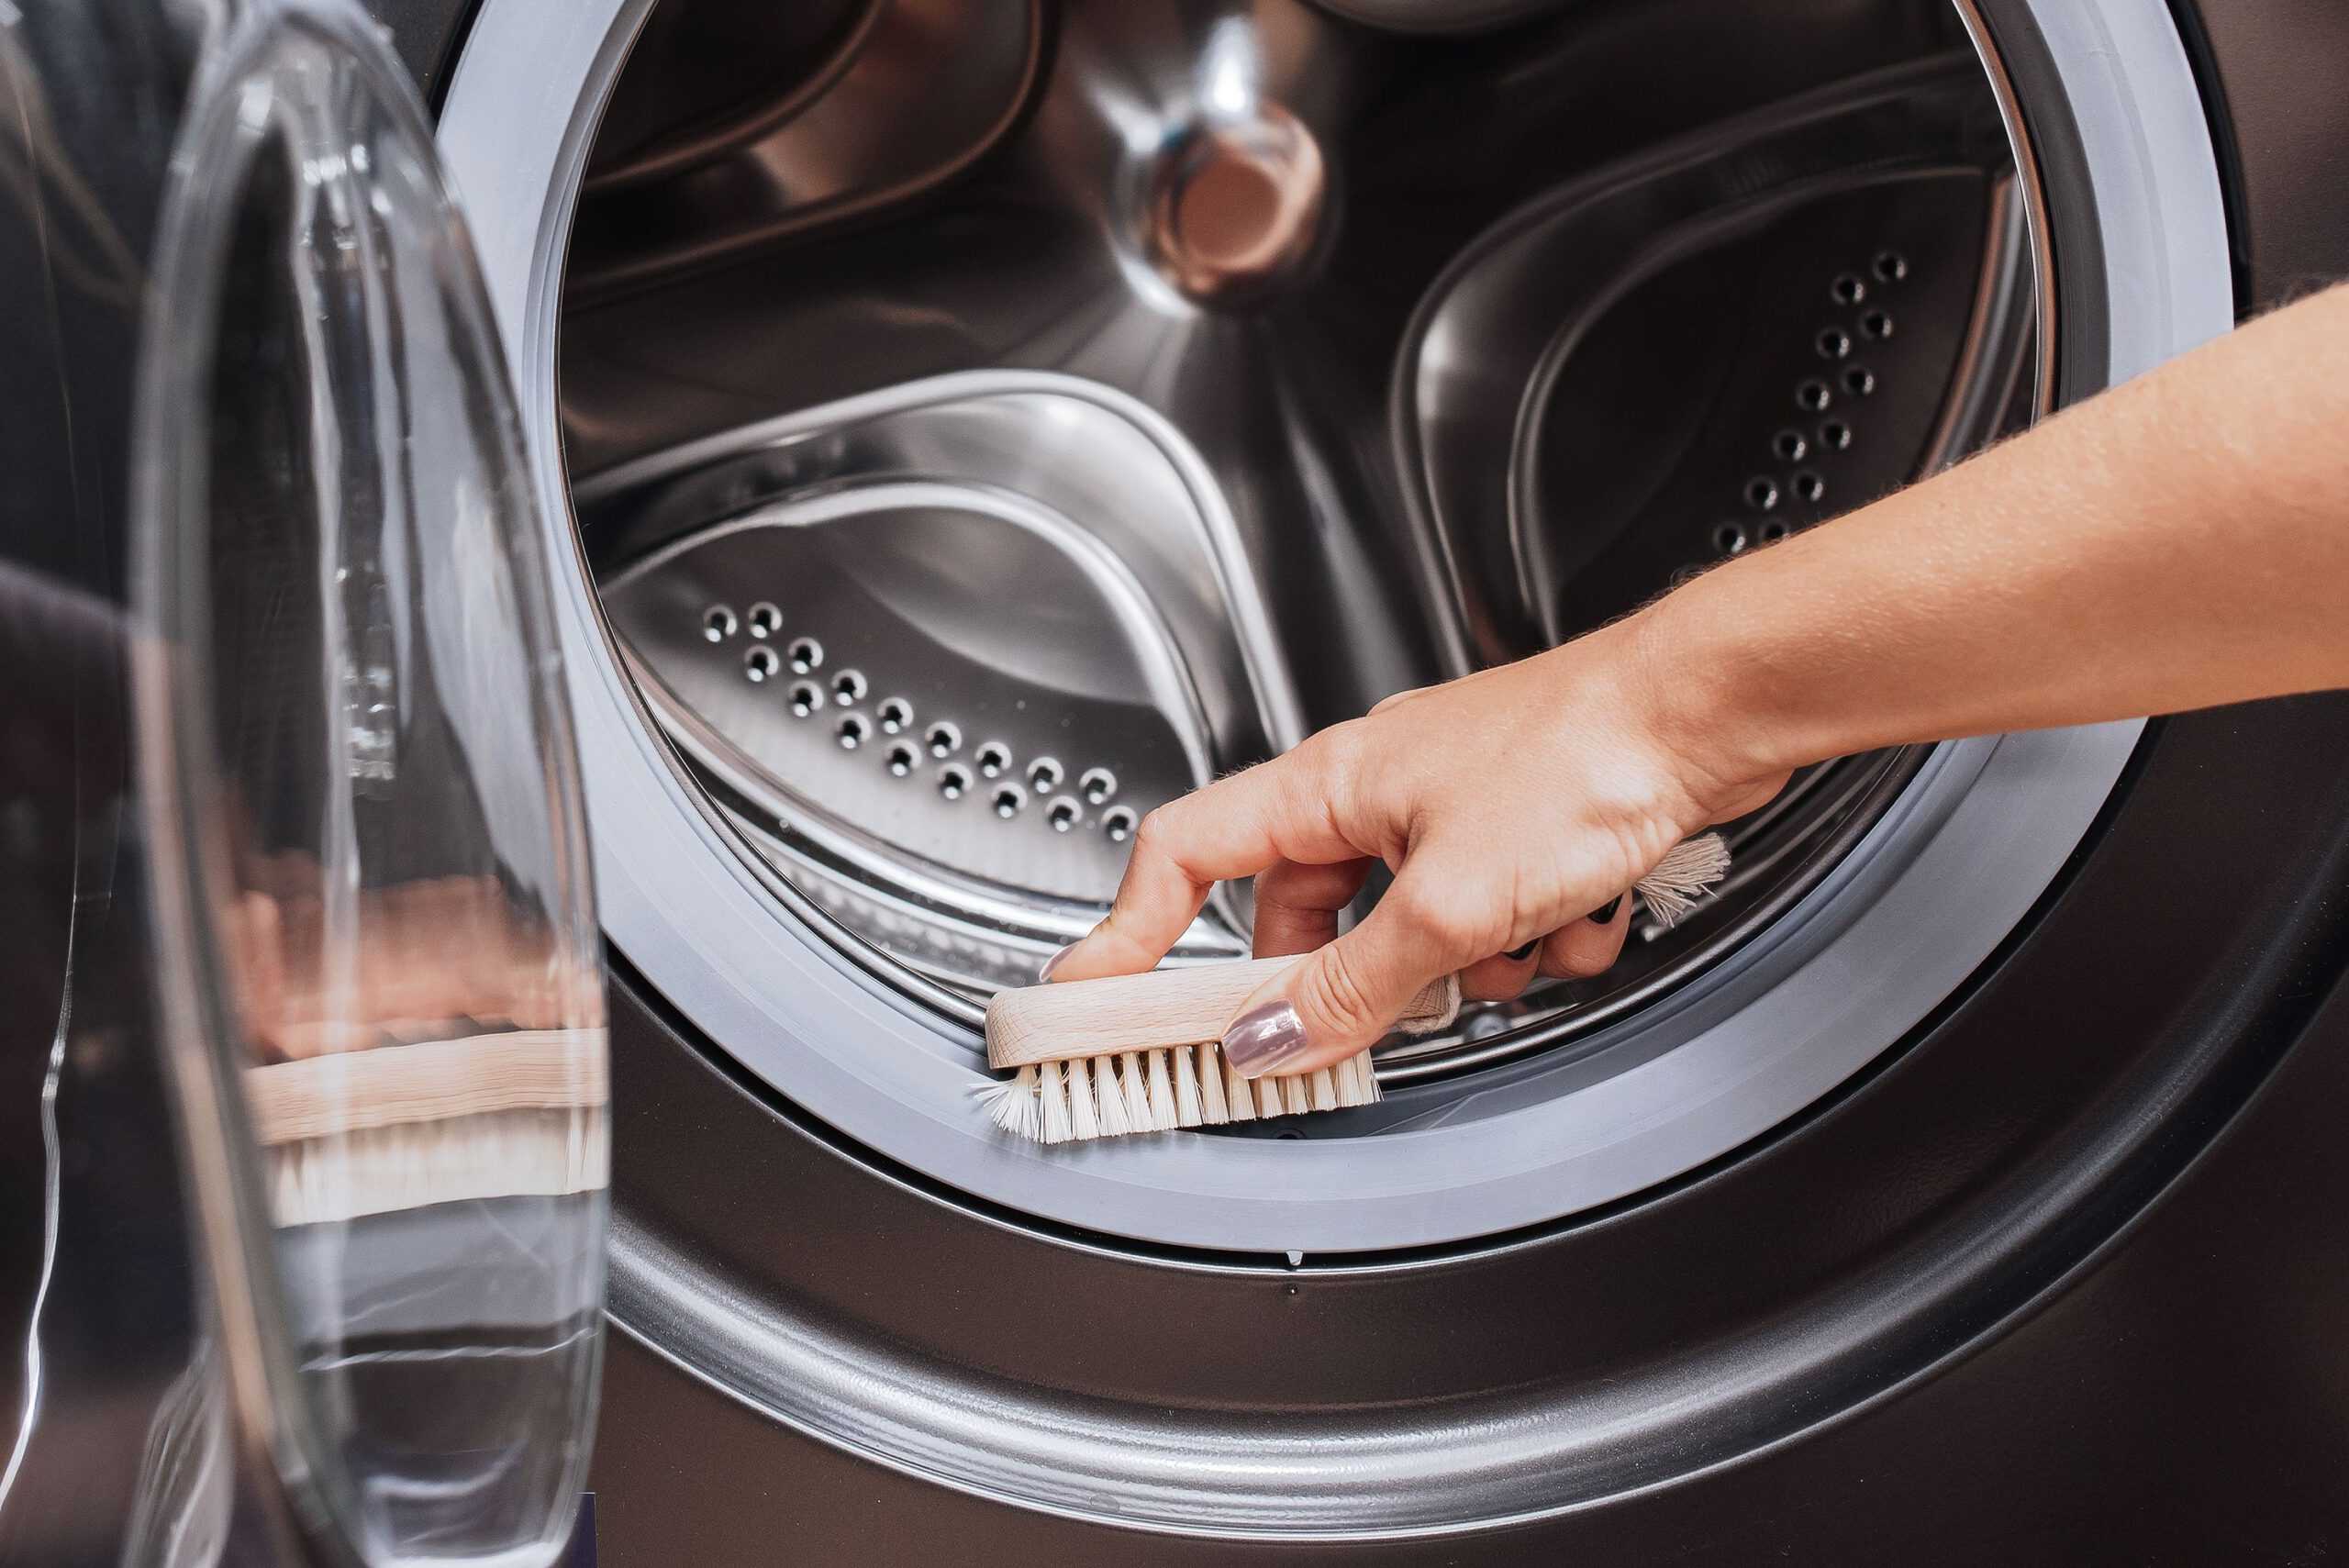 Чистка стиральной машины автомат уксусом и содой: удаление накипи